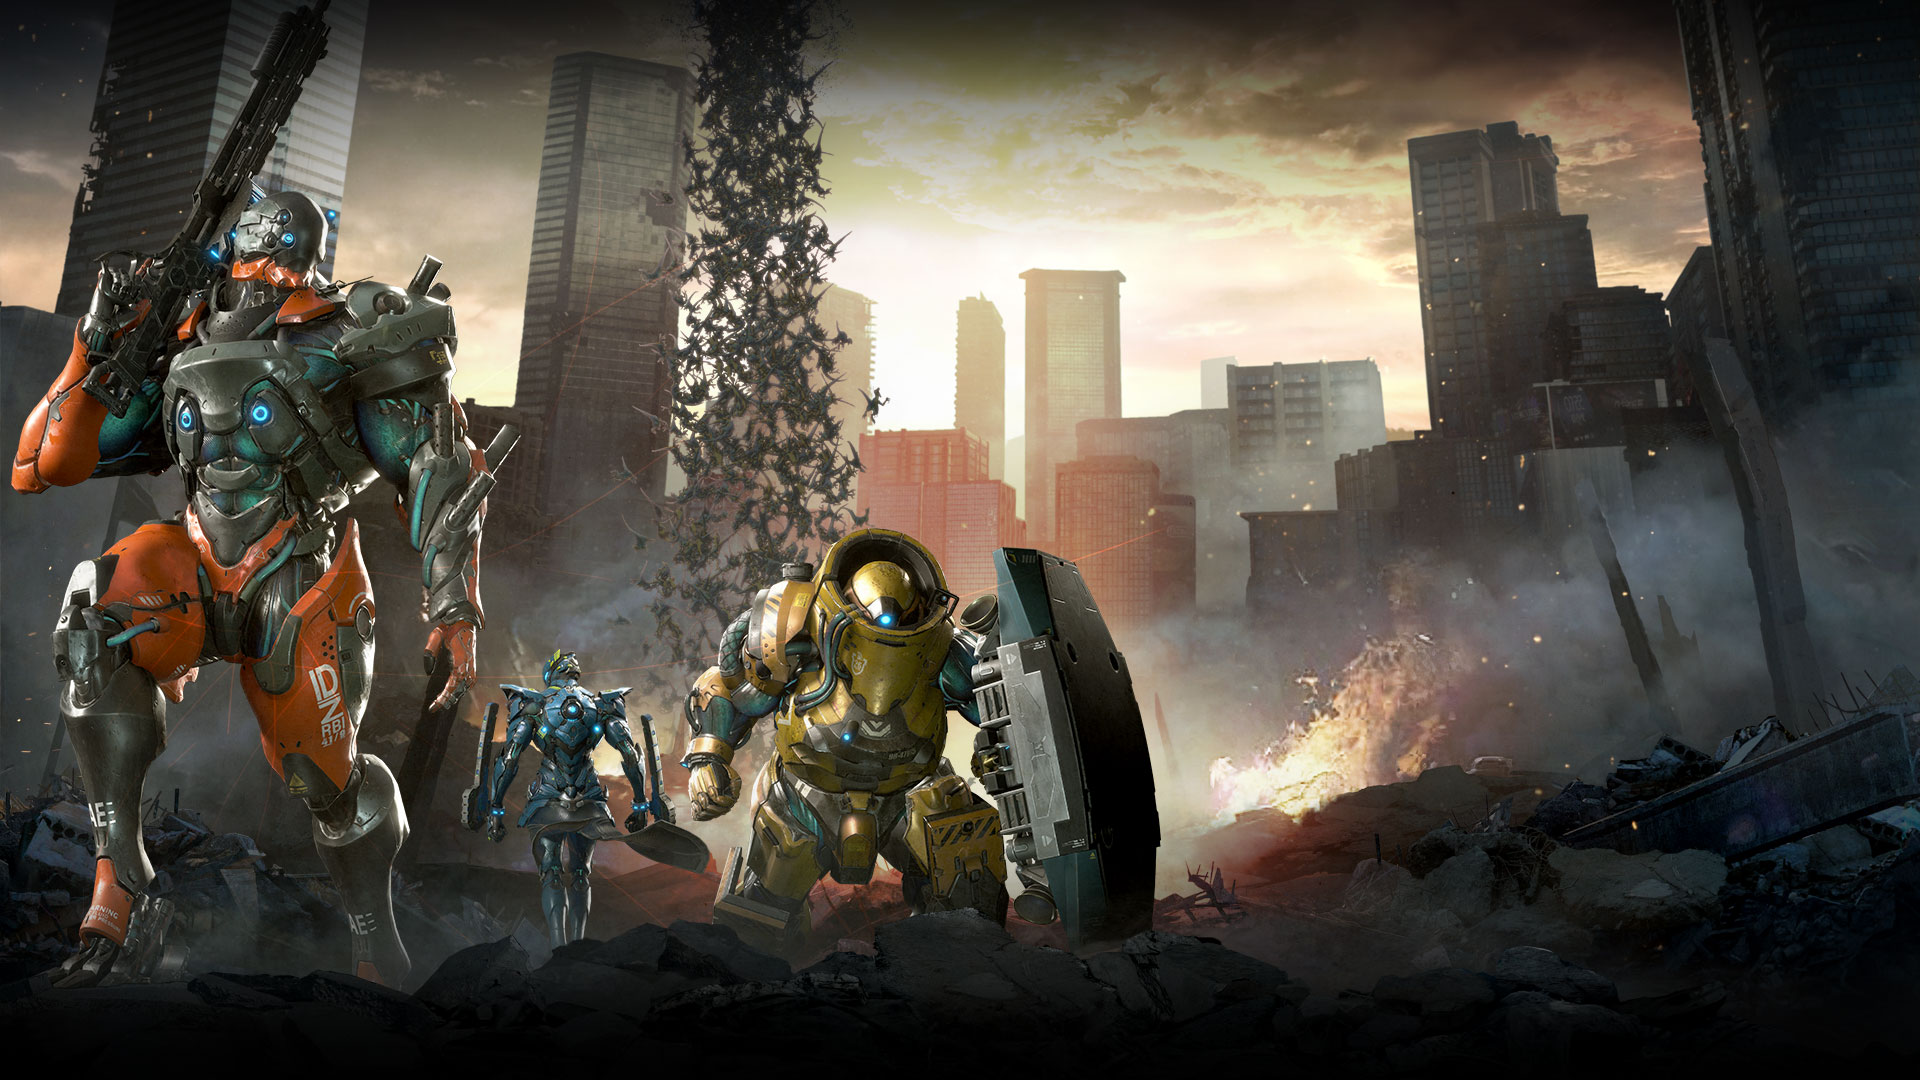 Tři postavy v mechanizovaných zbrojích stojí v sutinách města, zatímco se z oblohy snáší dinosauři.